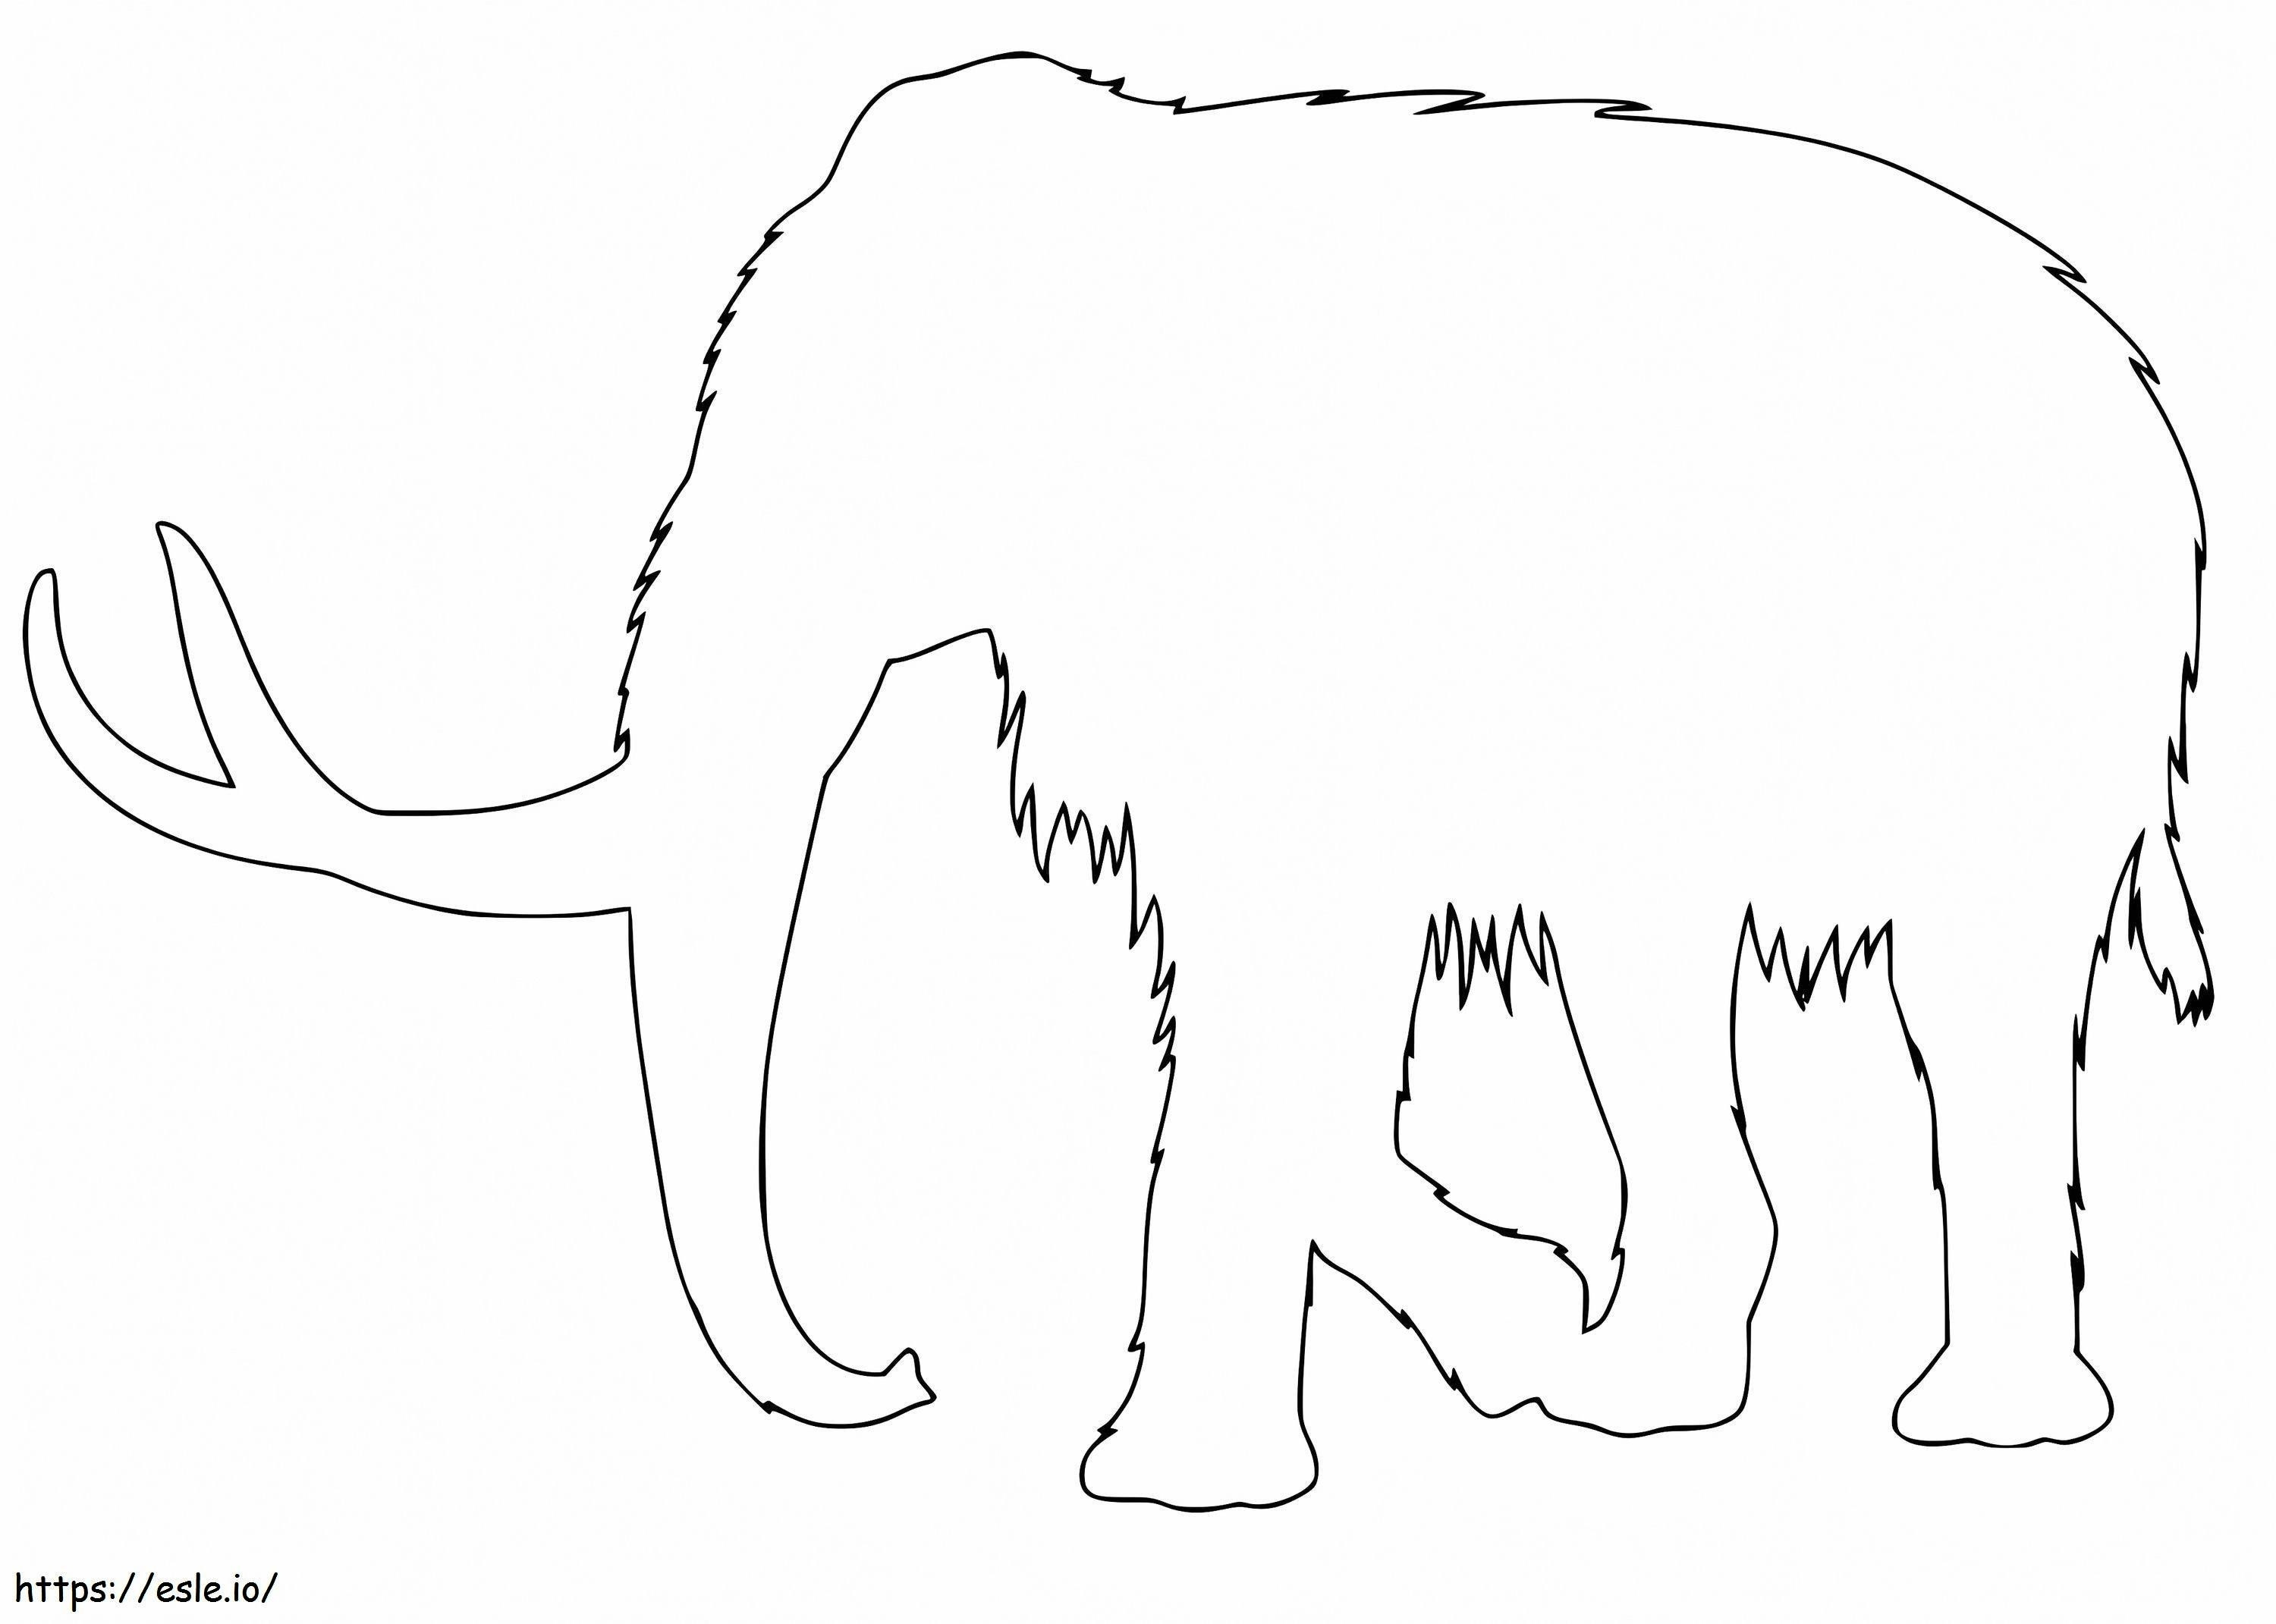 Anahat mamut boyama